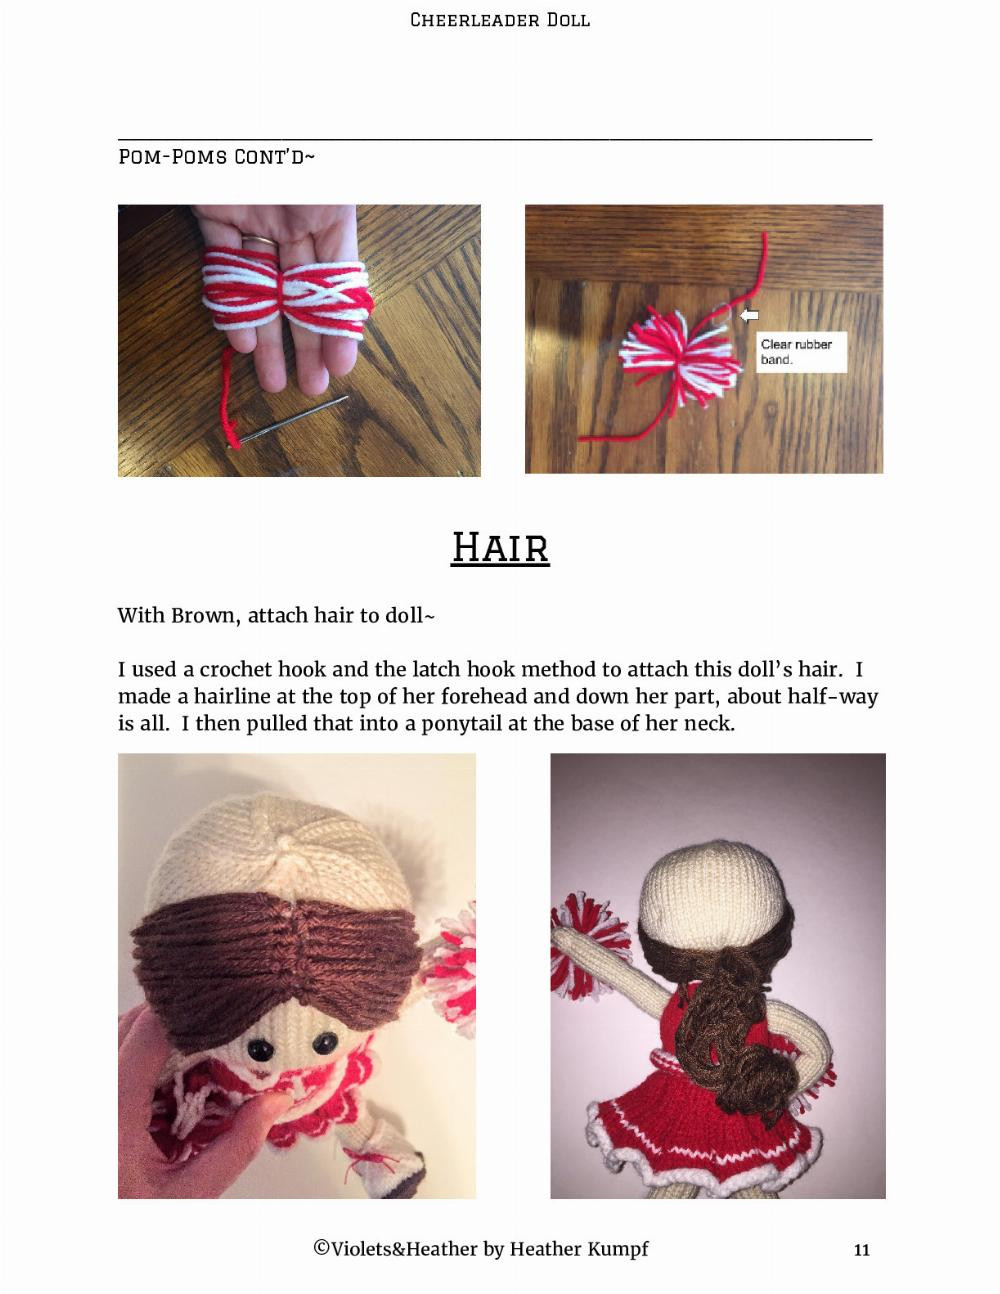 Cheerleader​ ​doll crochet pattern